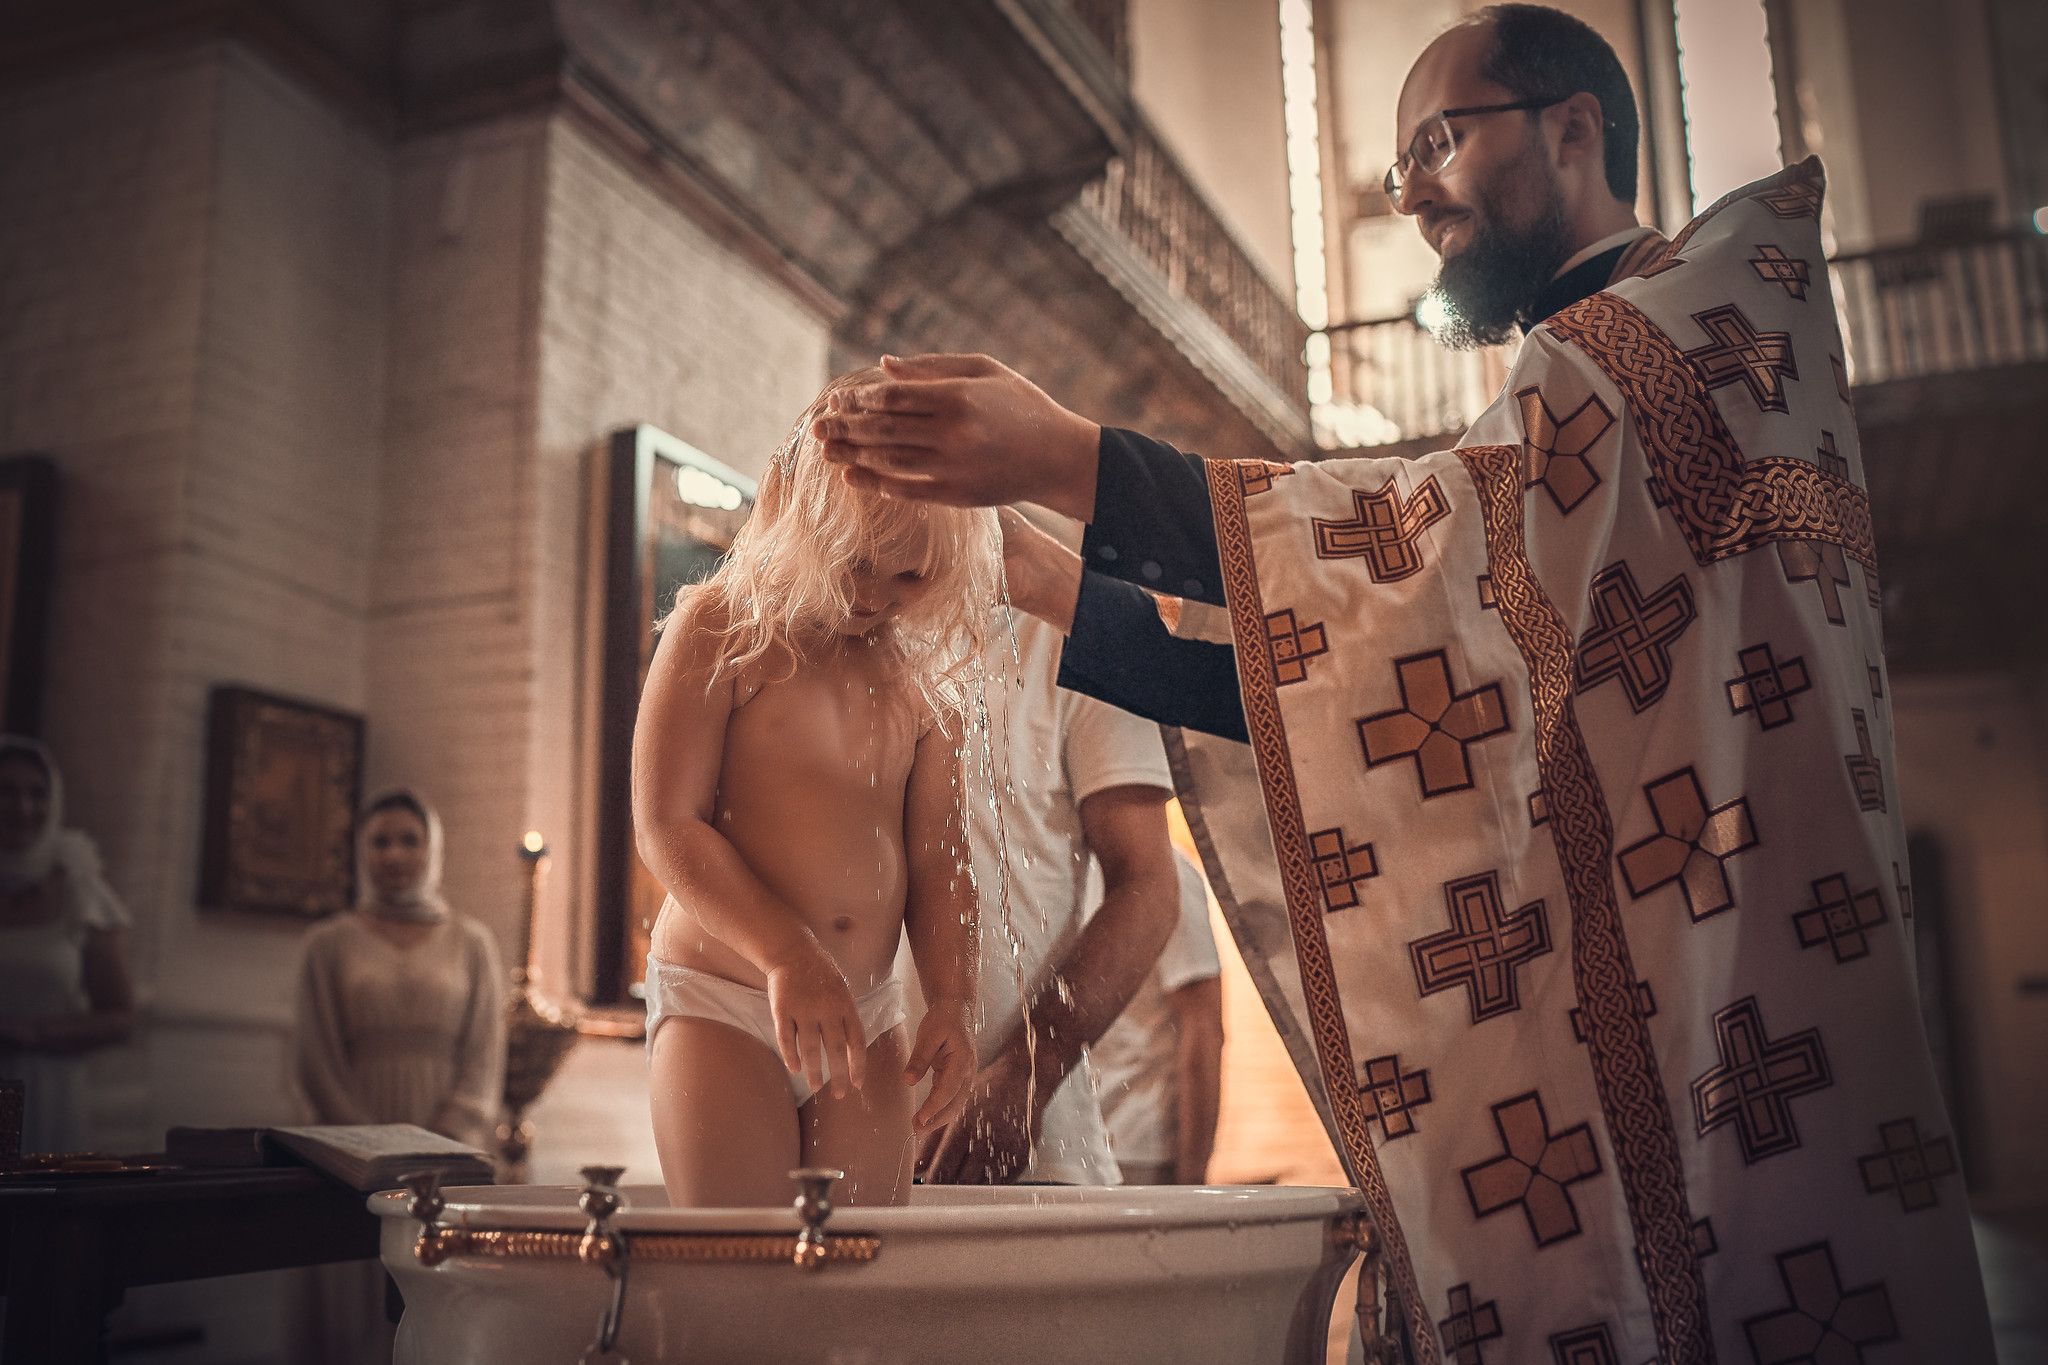 Съёмка крещения дошкольников в Старочеркасском соборе